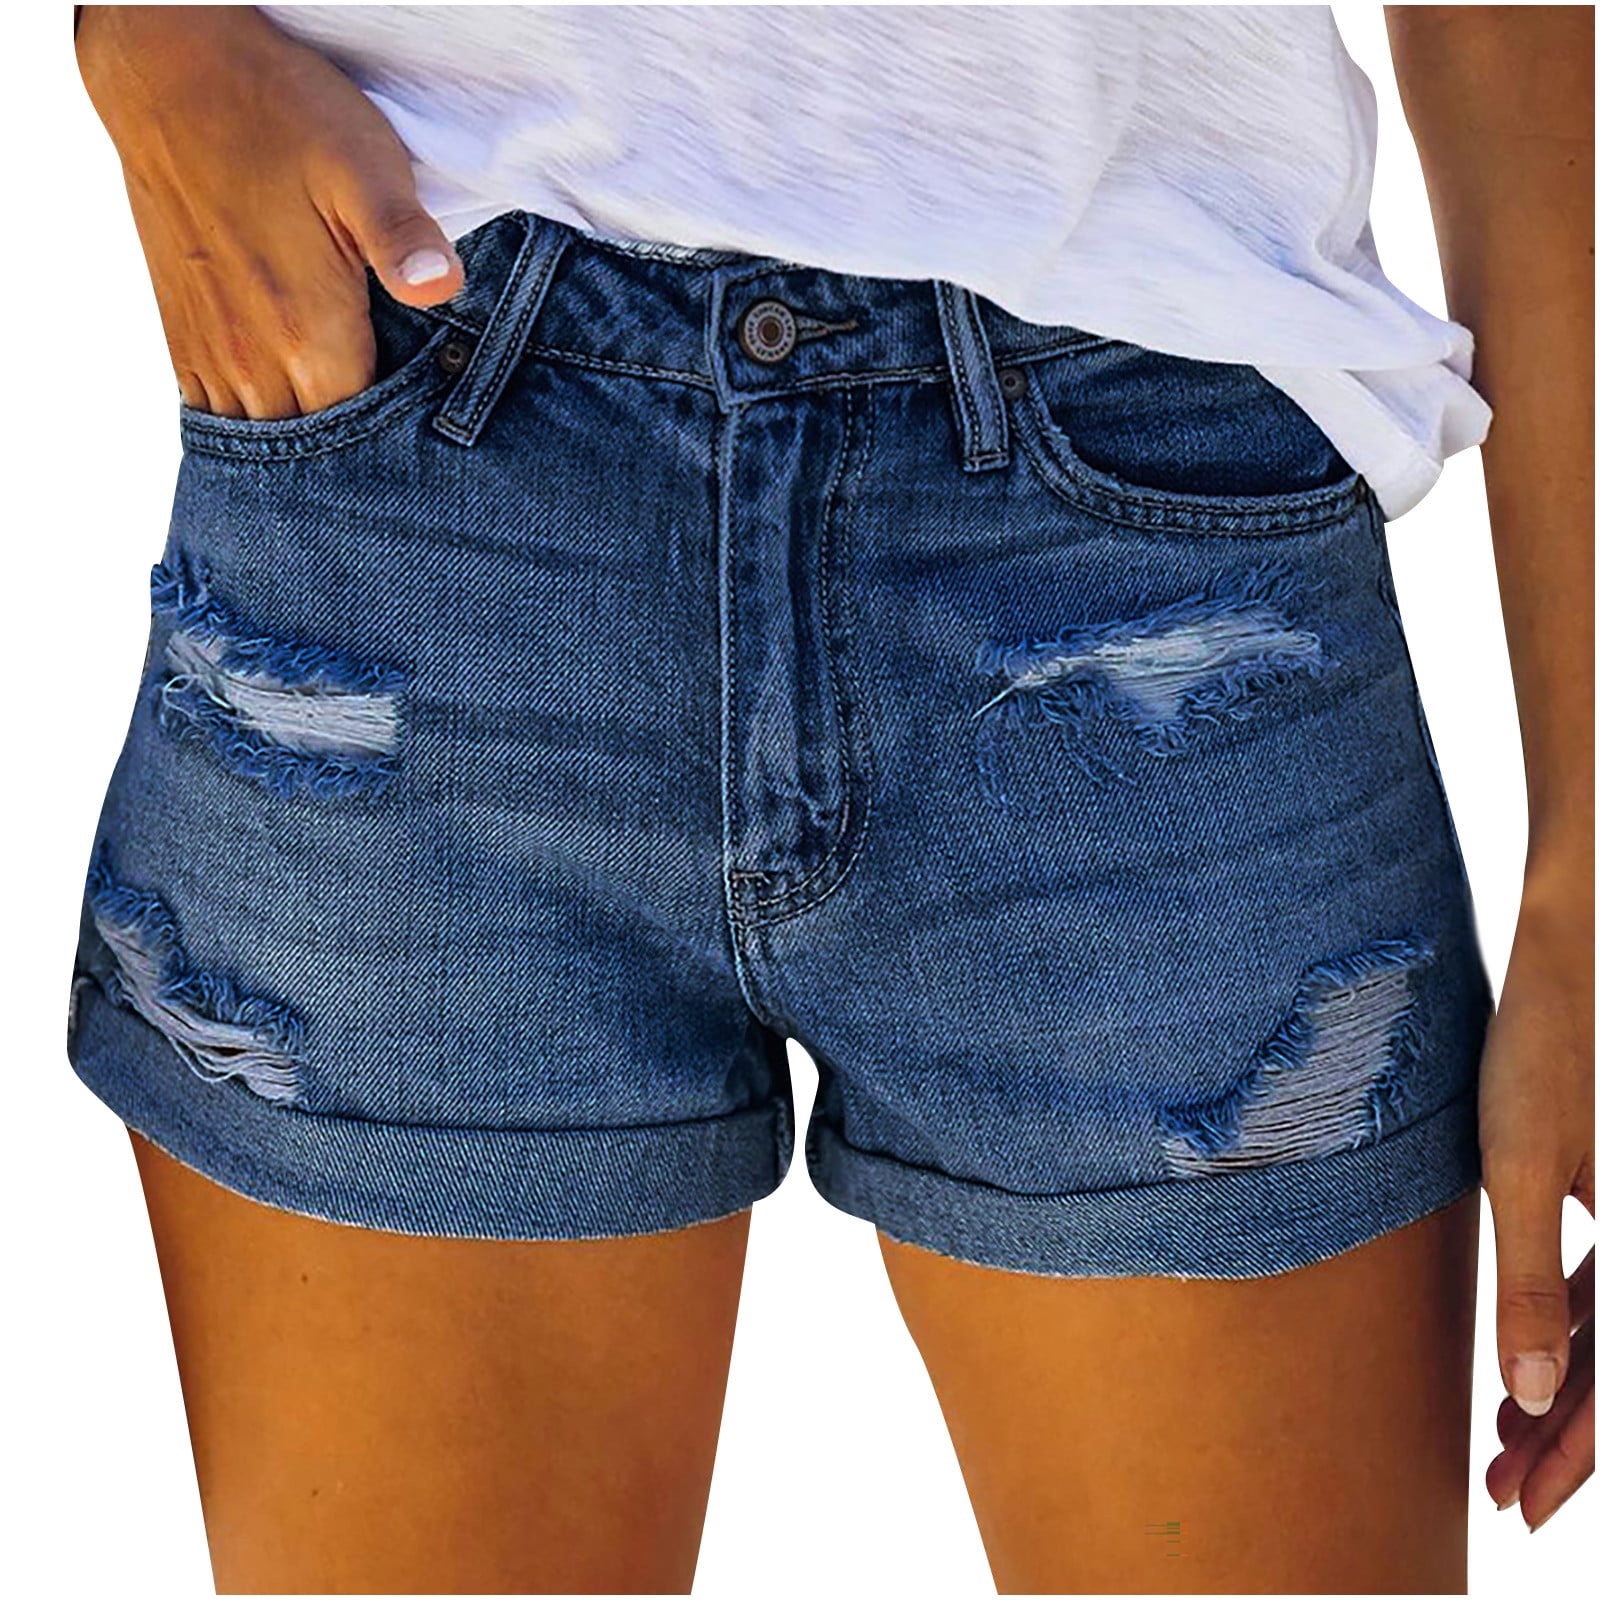 B91xZ Summer Pants Women Color High Women Elastic Denim Pocket Jeans Solid  Waist Slim Button Pants Women's Jeans Jeans For Women Light Blue,Size L